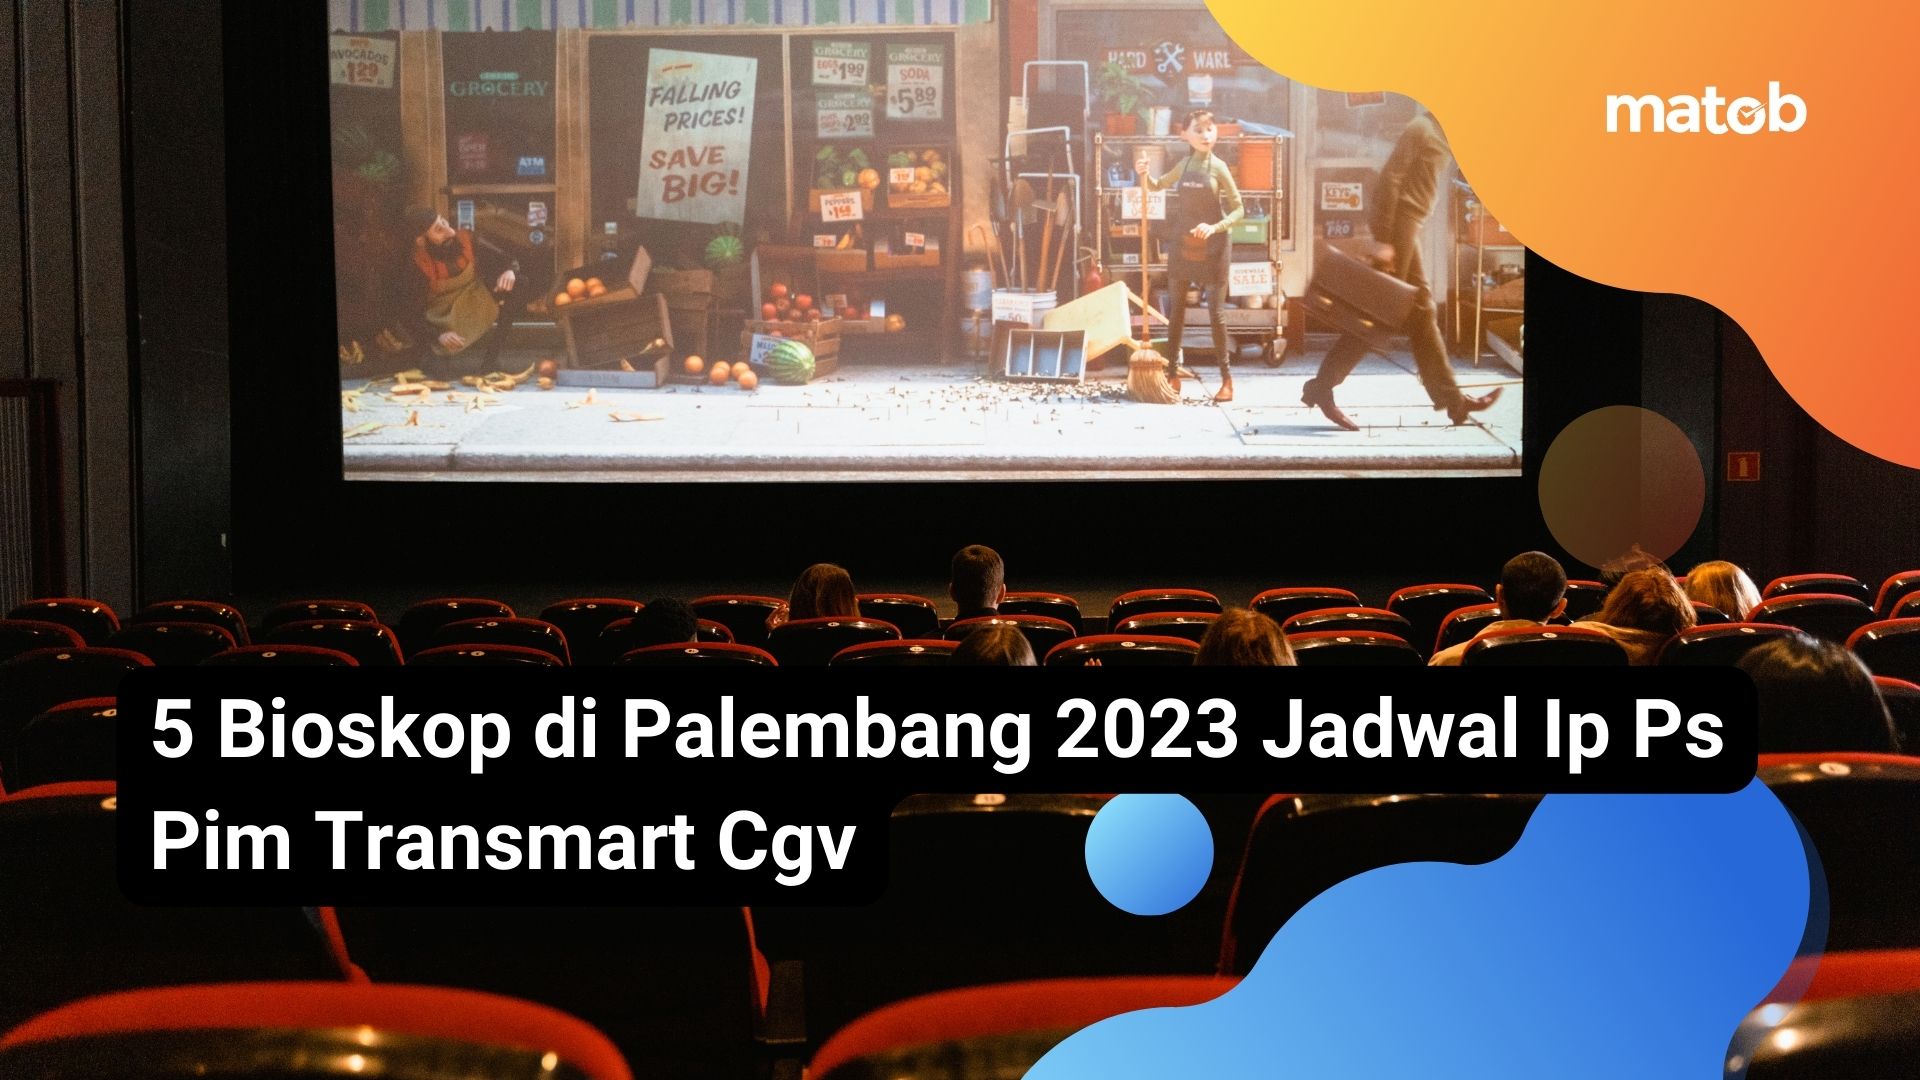 5 Bioskop di Palembang 2023 Jadwal Ip Ps Pim Transmart Cgv